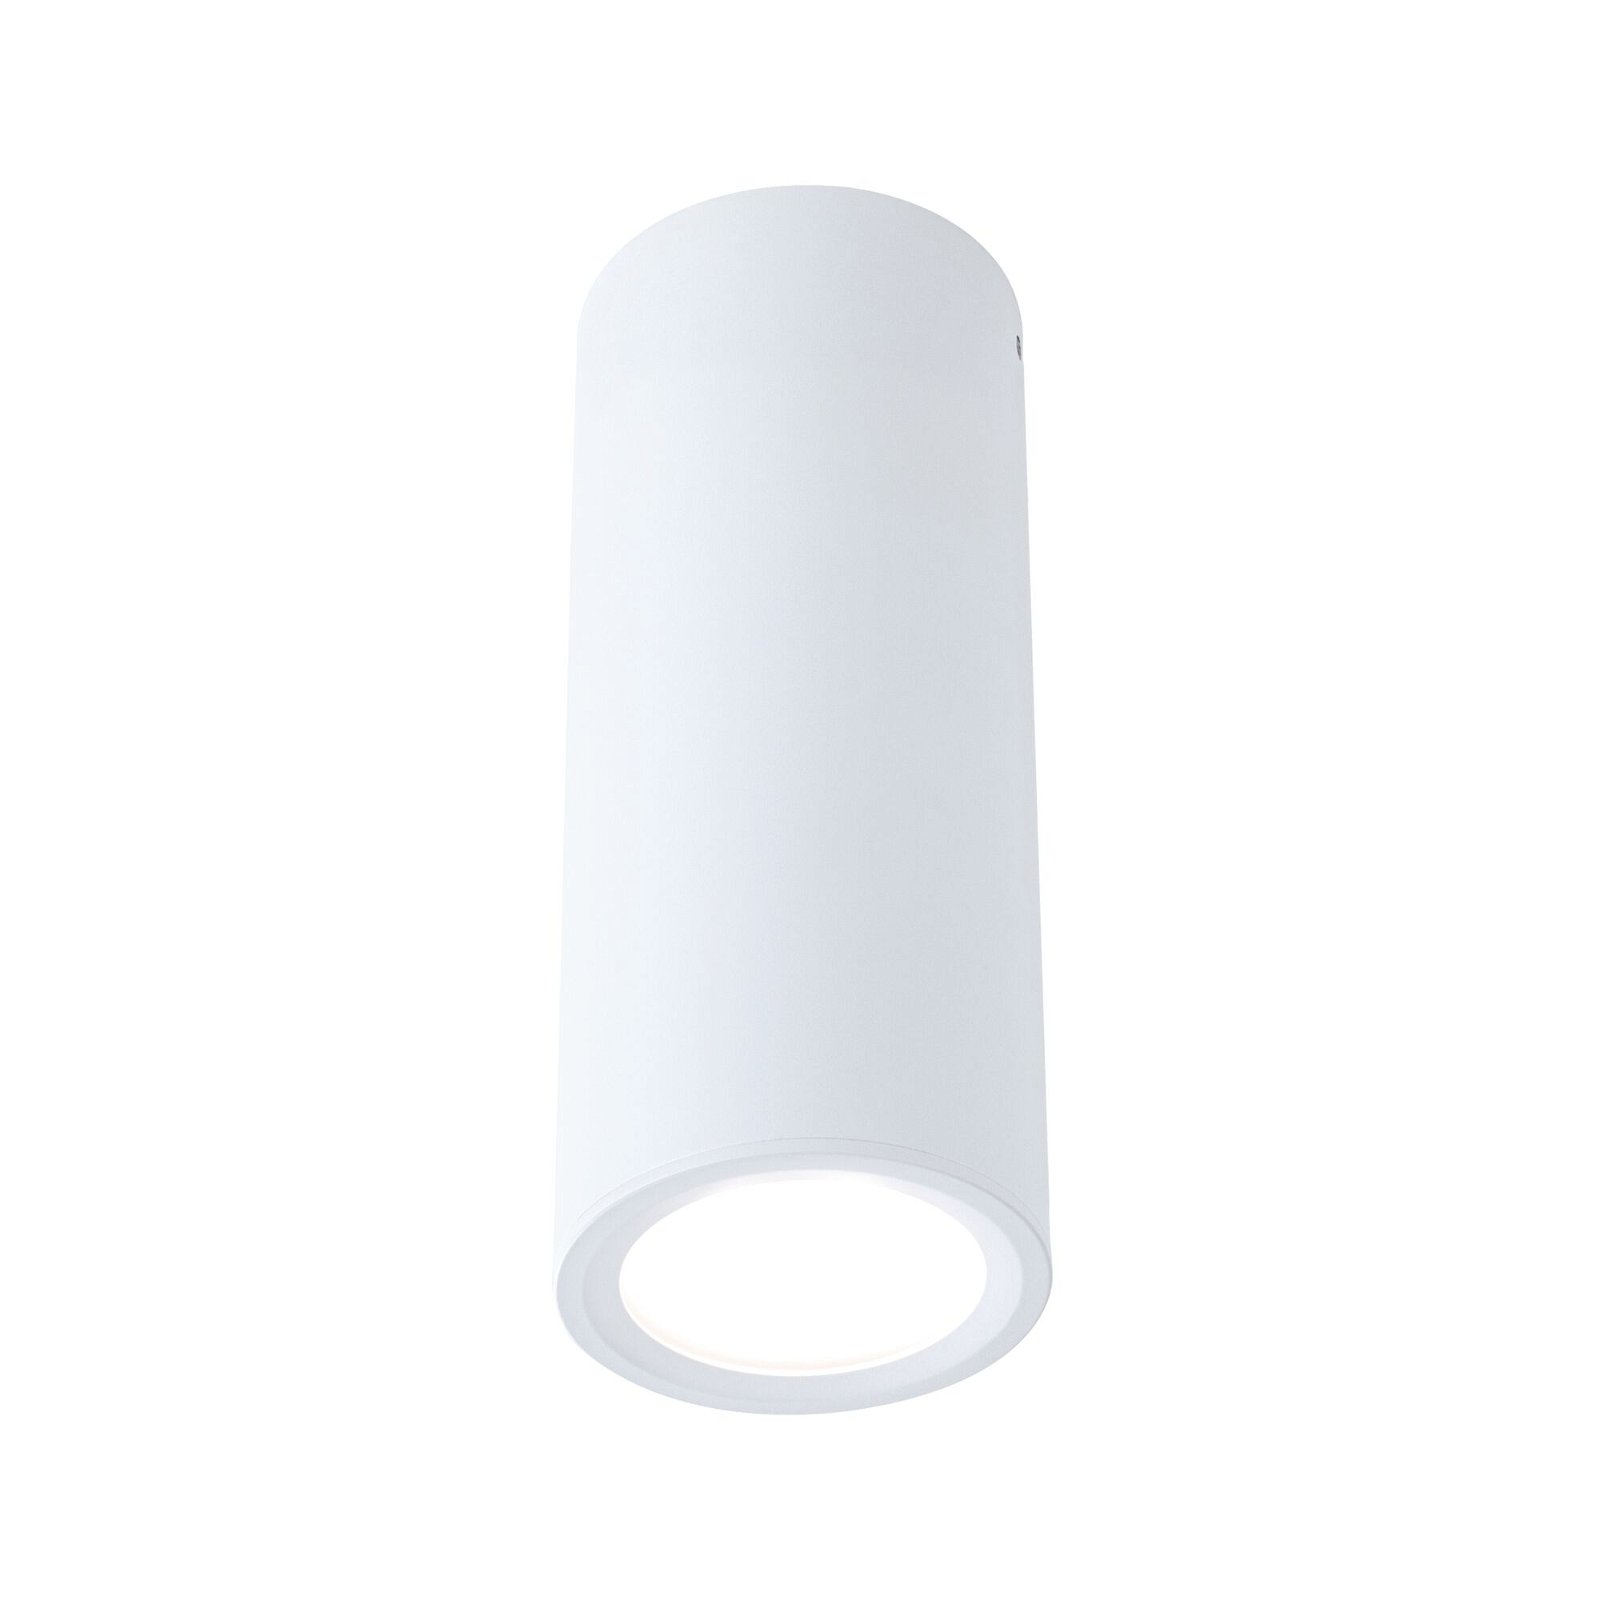 LED Ceiling luminaire 3-Step-Dim Barrel 2700K 470lm 230V 6W dimmable Matt white